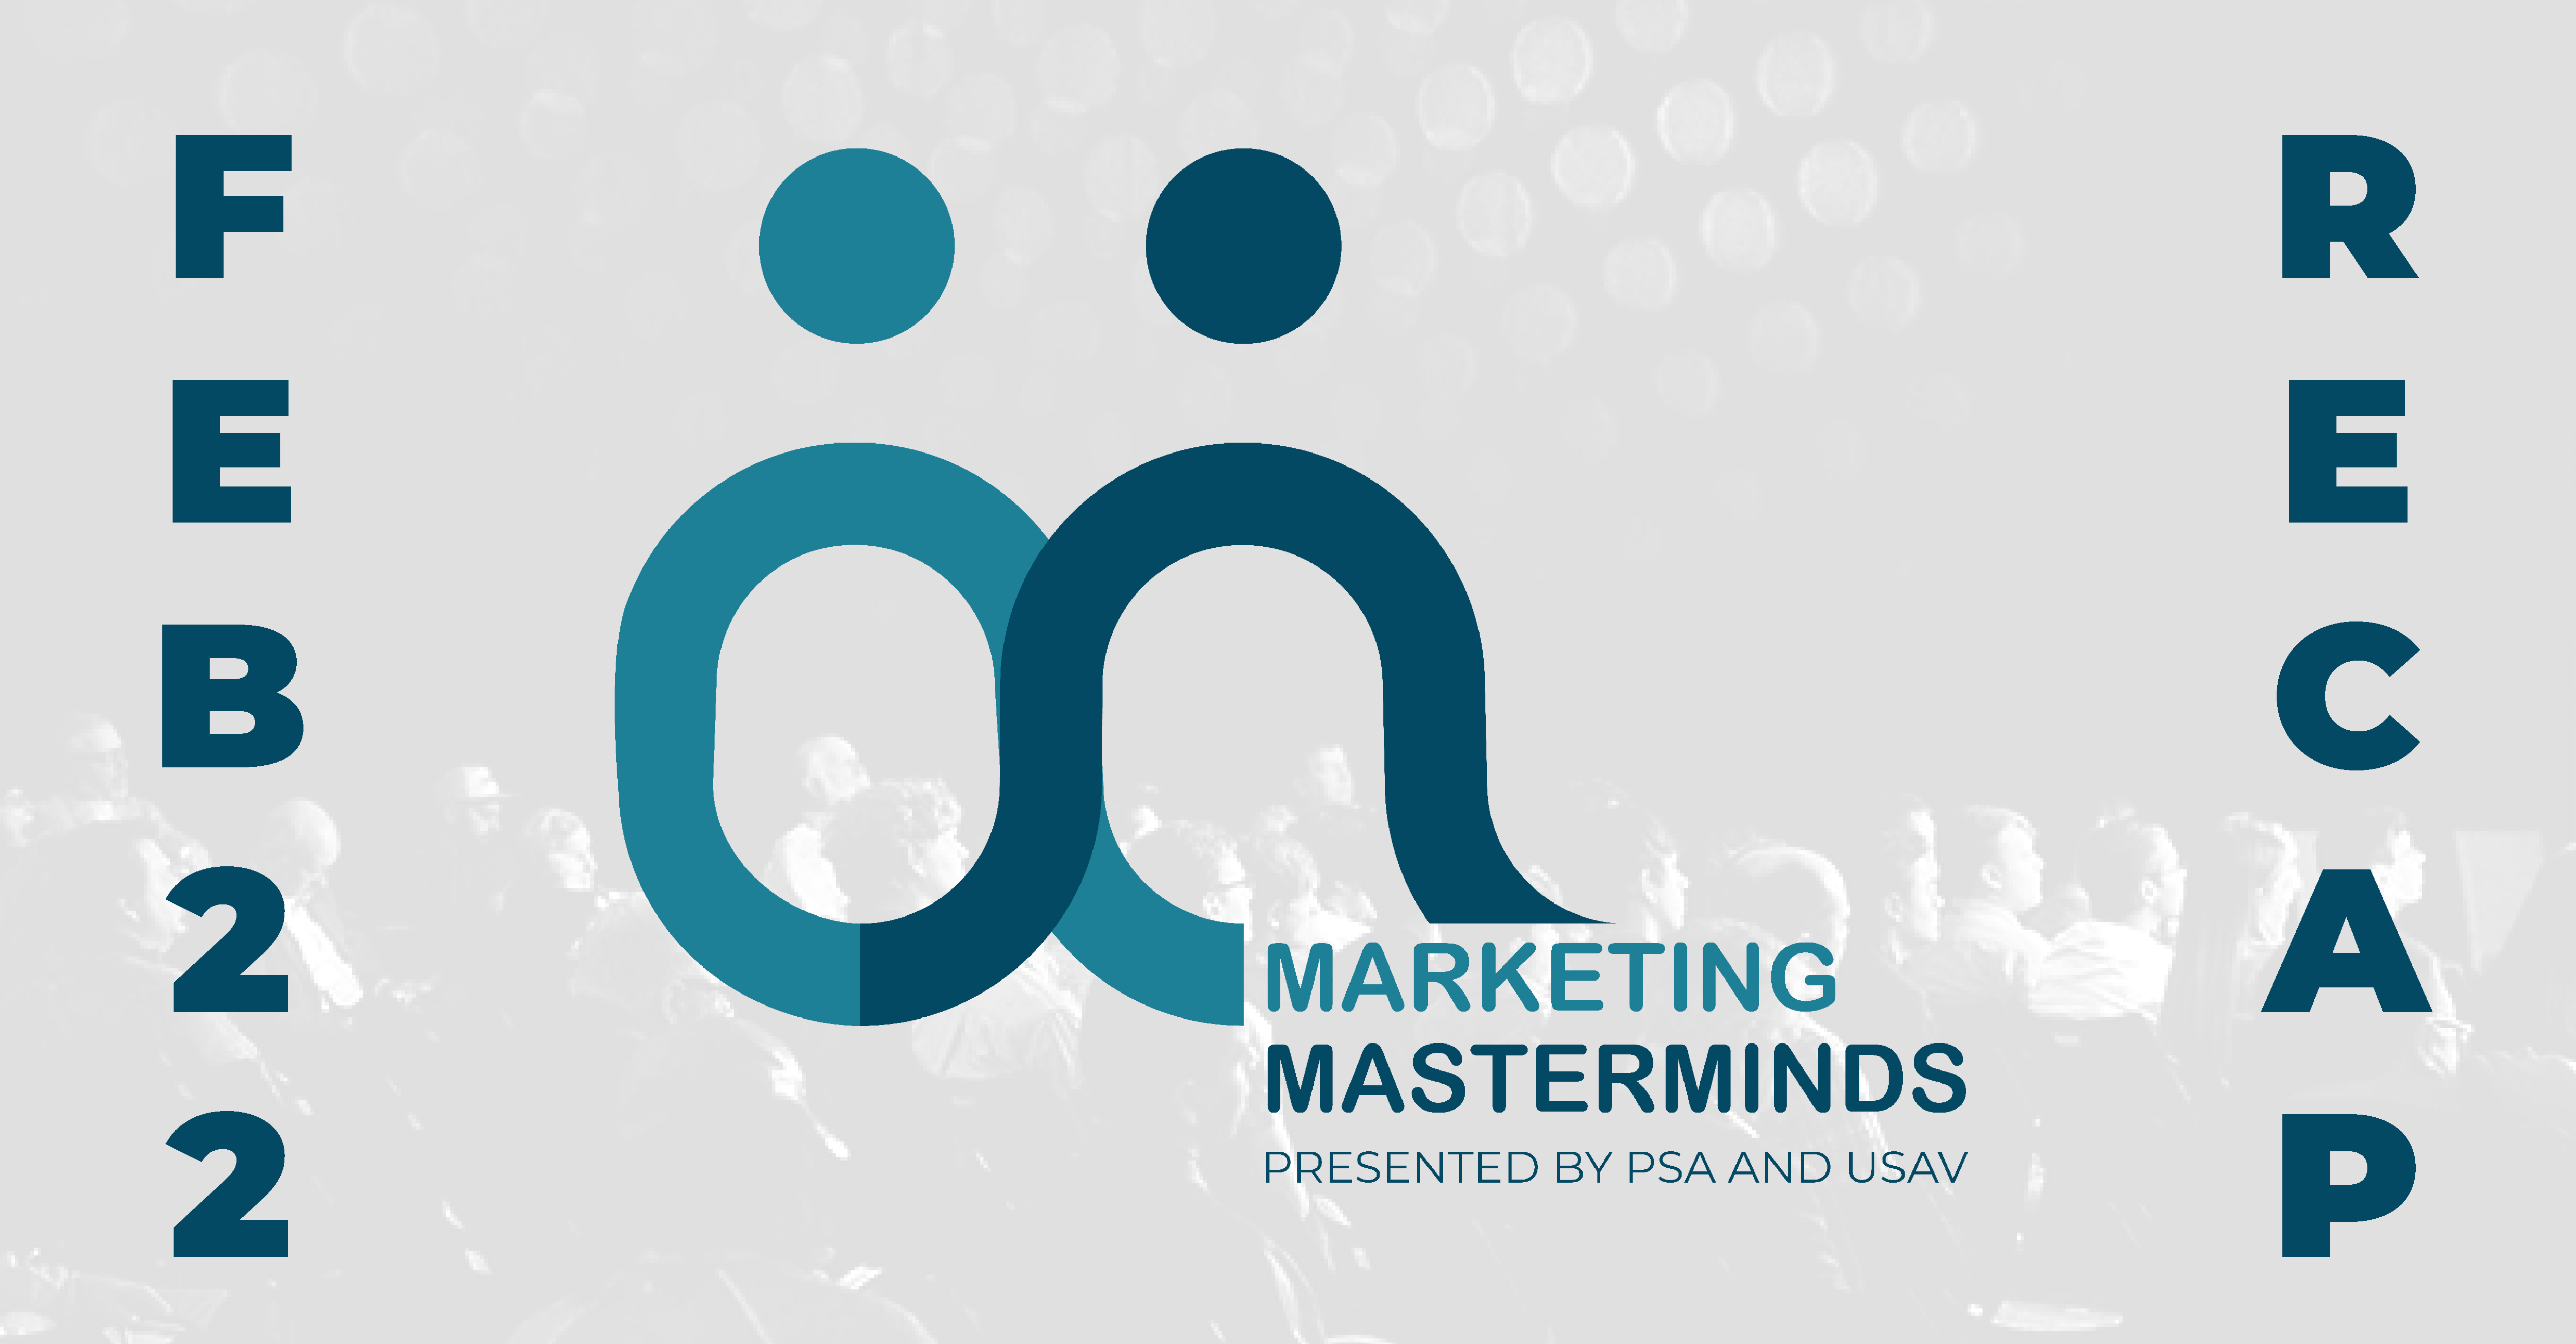 PSA Marketing Masterminds